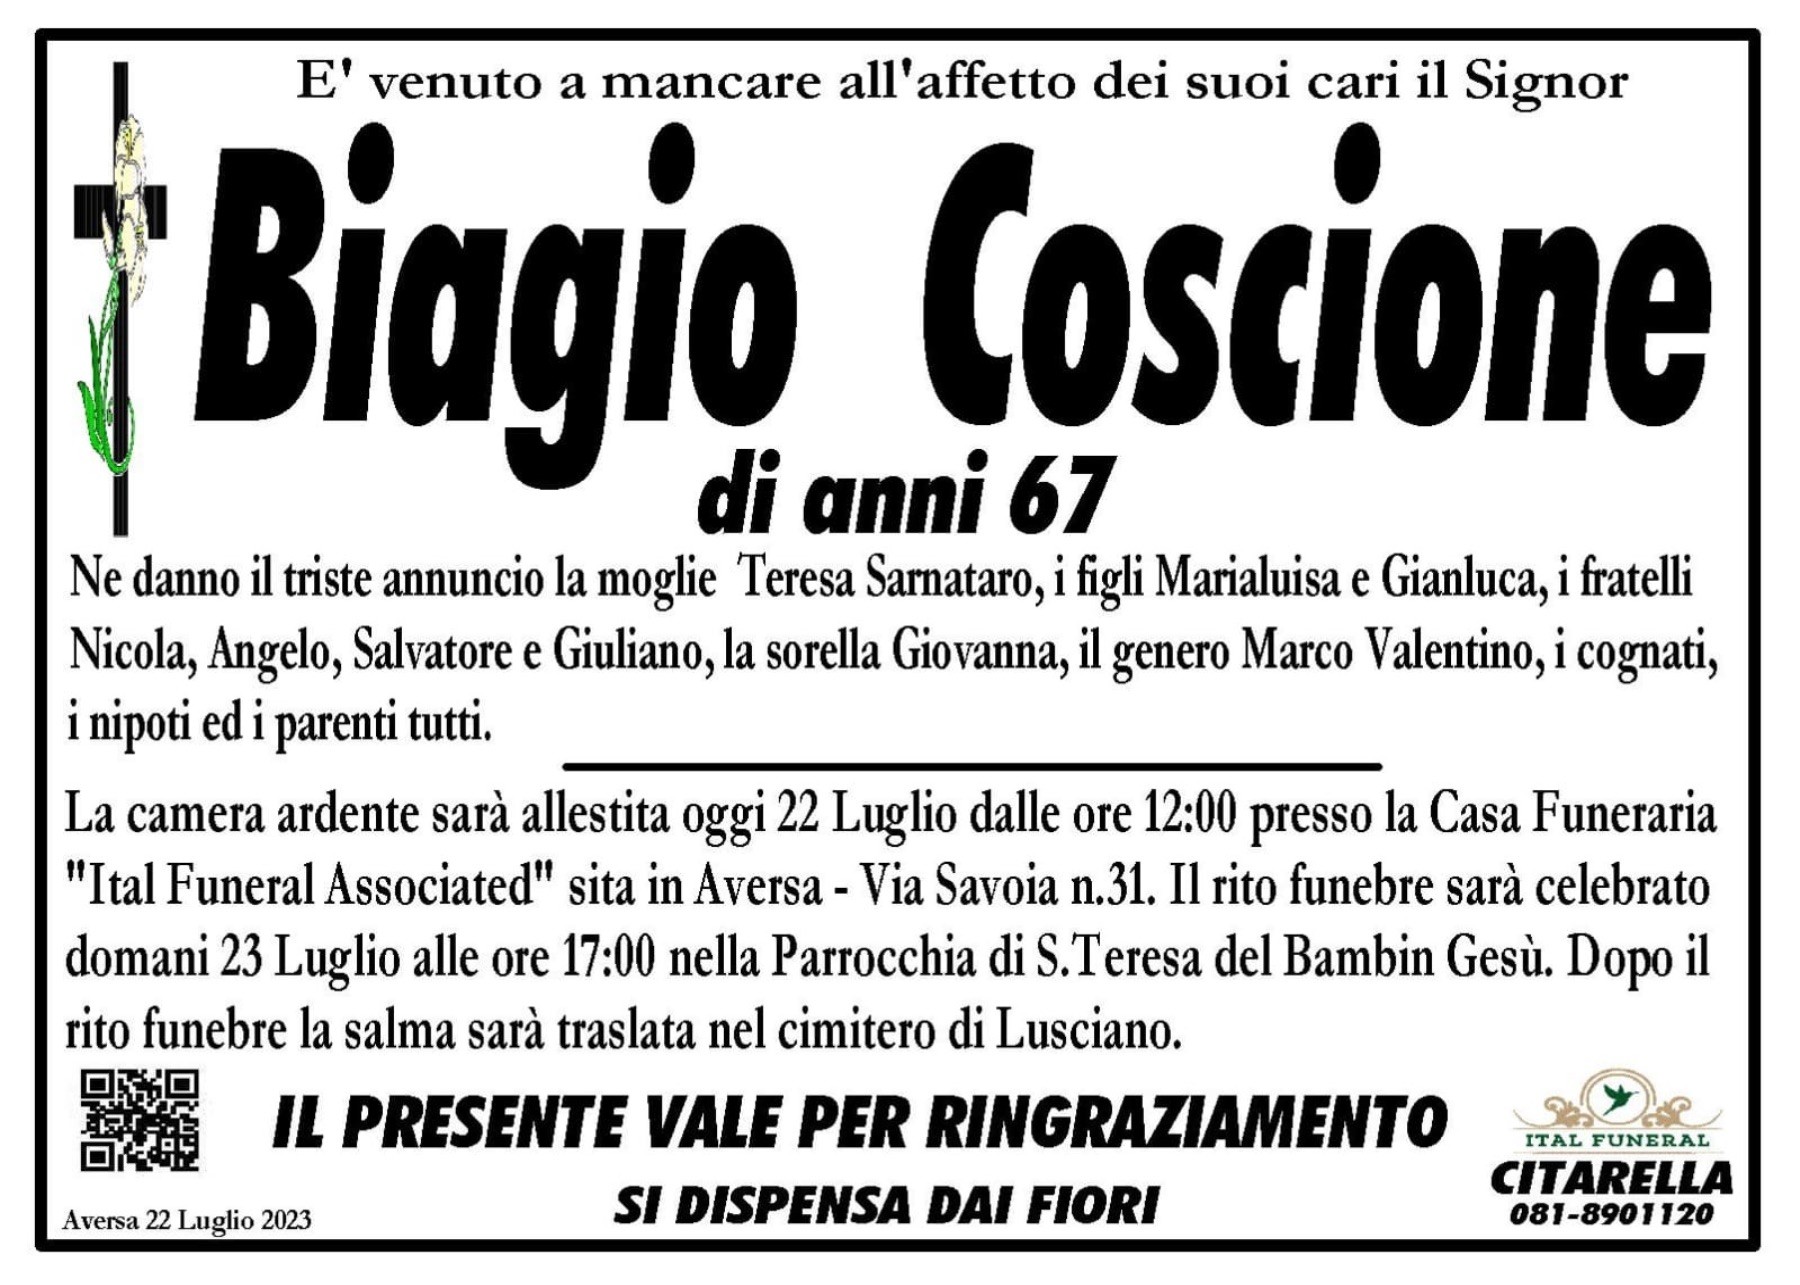 Biagio Coscione